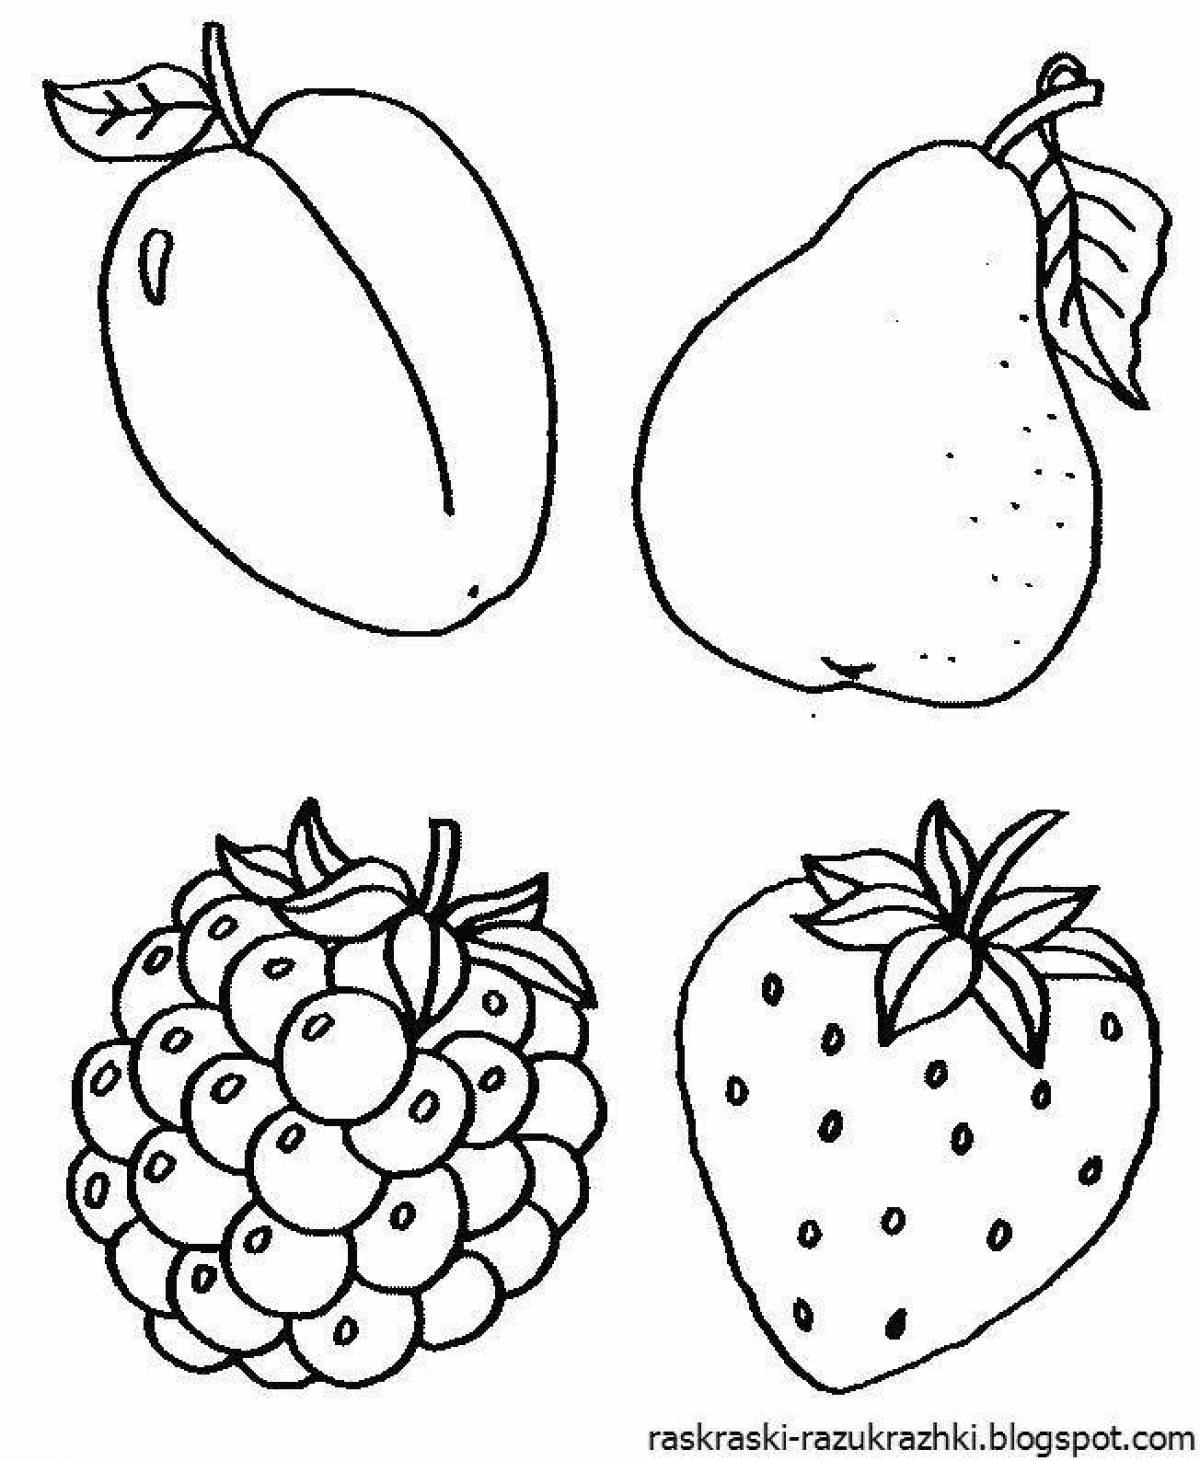 Красочная страница раскраски фруктов для детей 4-5 лет